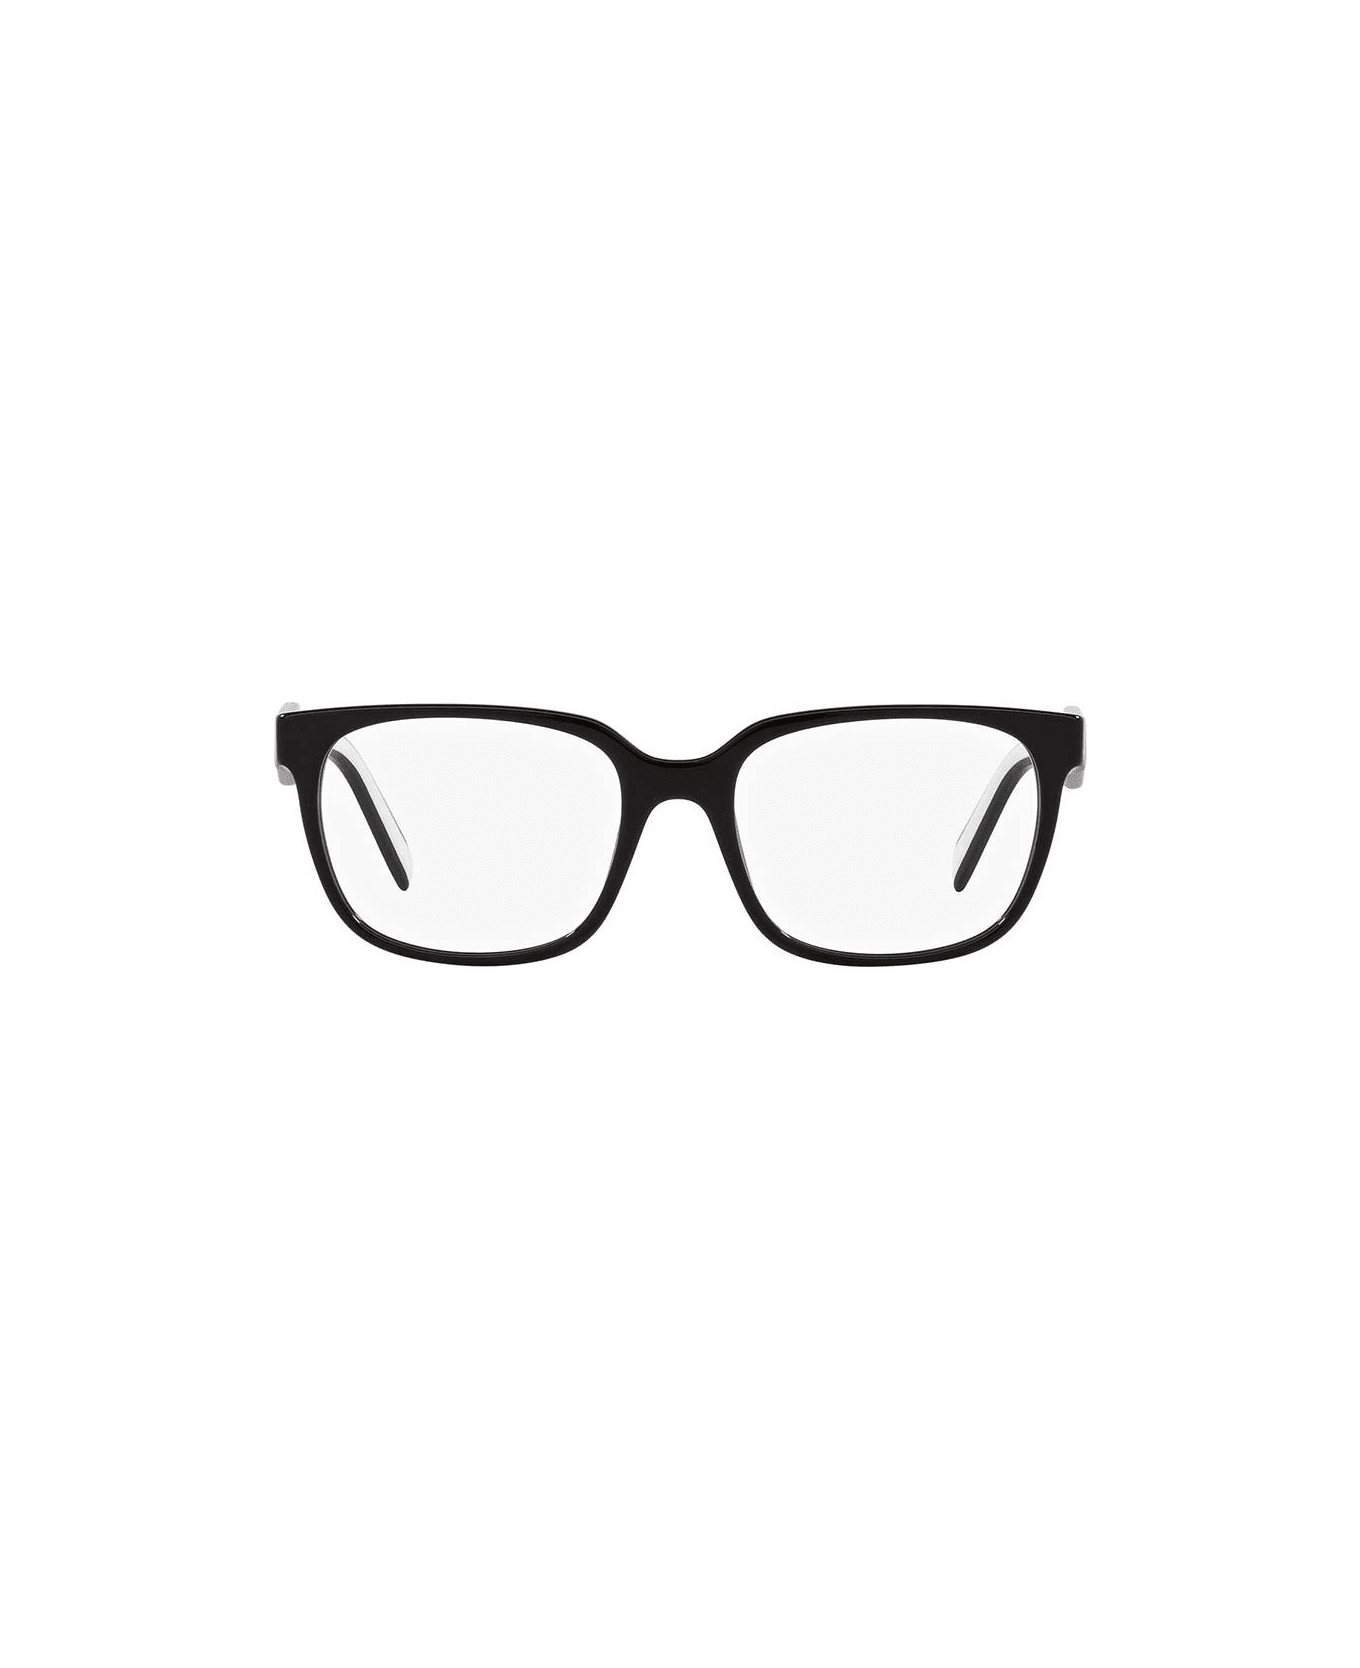 Prada Eyewear Vista Frame - 1AB1O1 アイウェア